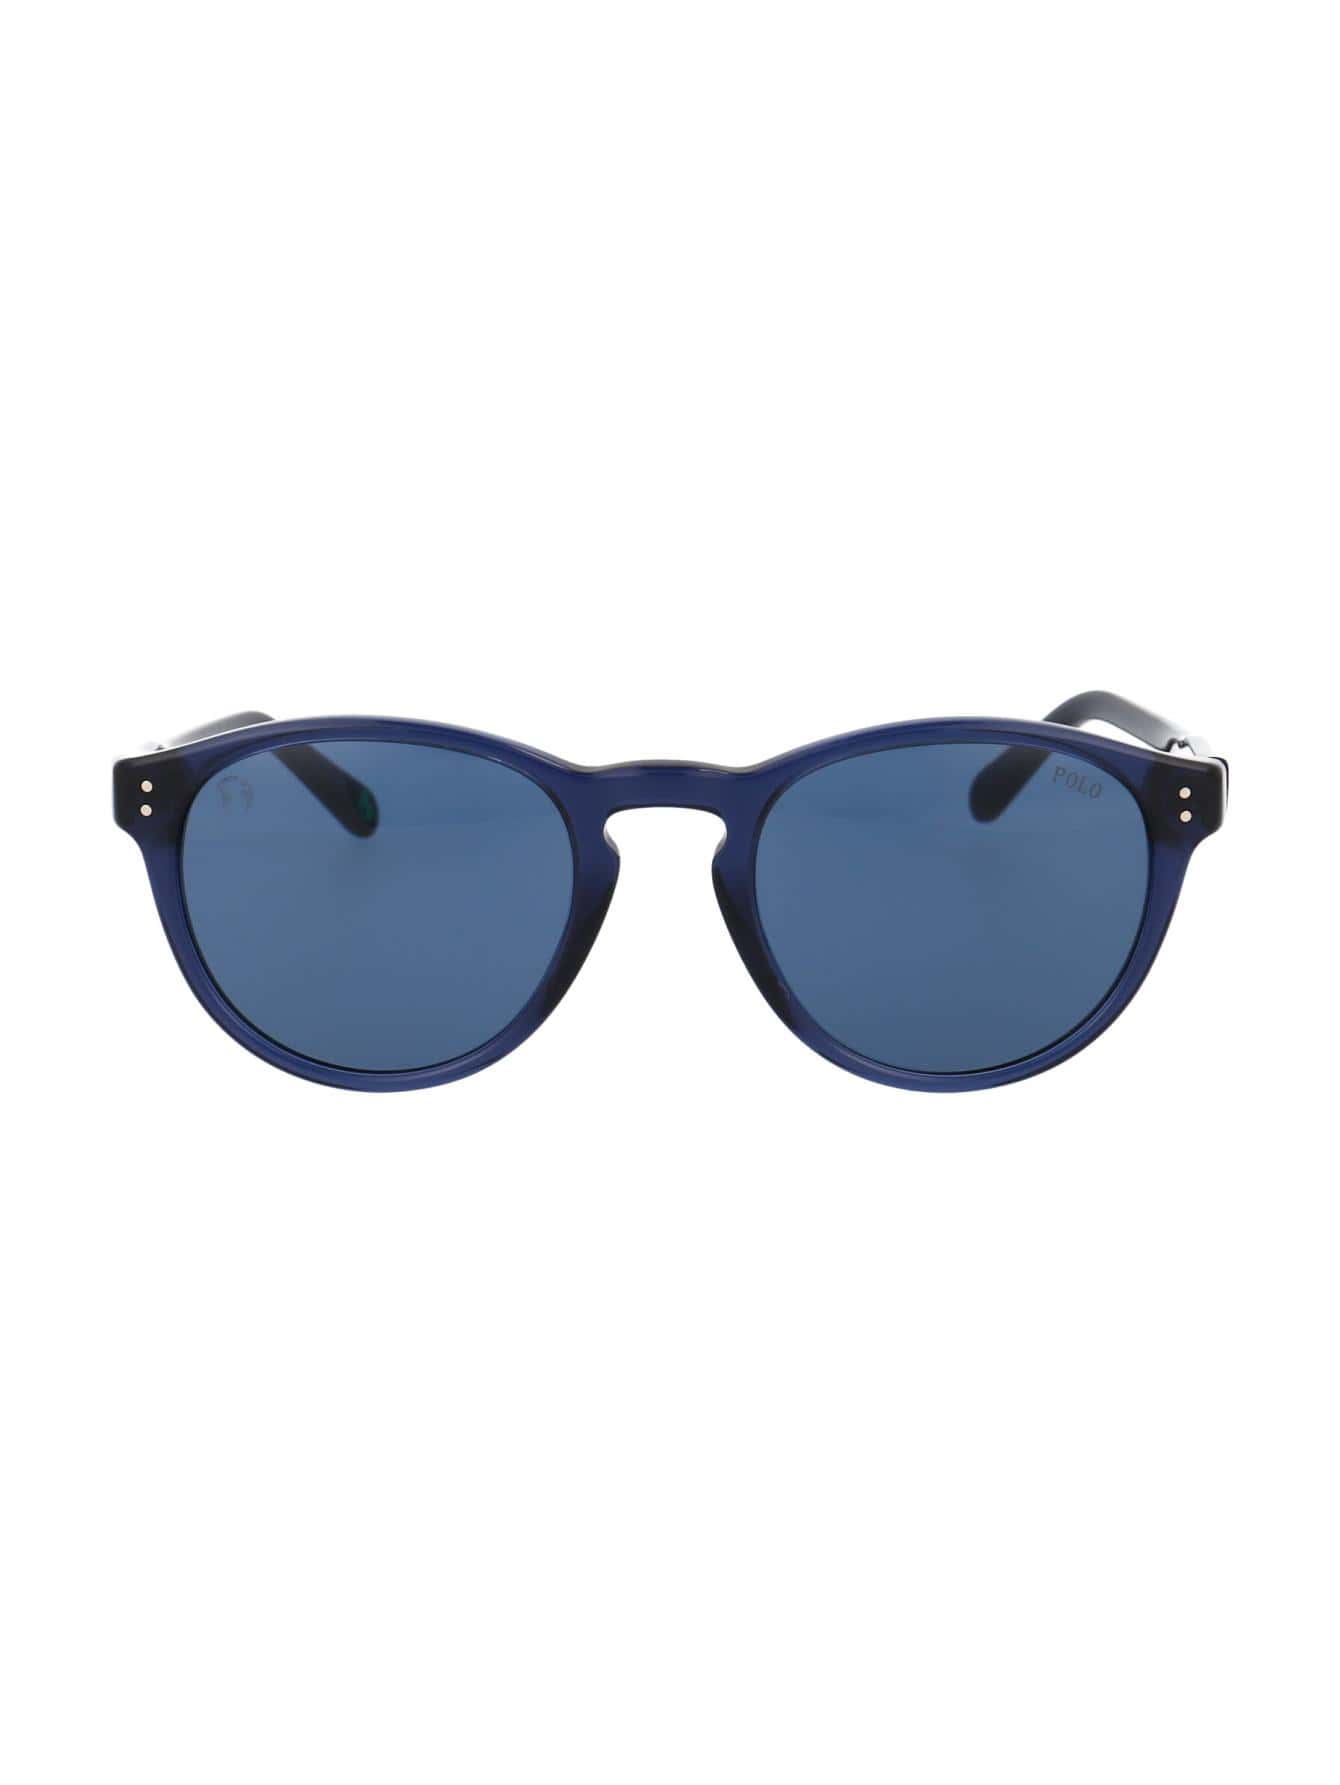 Мужские солнцезащитные очки Polo Ralph Lauren СИНИЕ 0PH4172595580, синий солнцезащитные очки polo ralph lauren черный